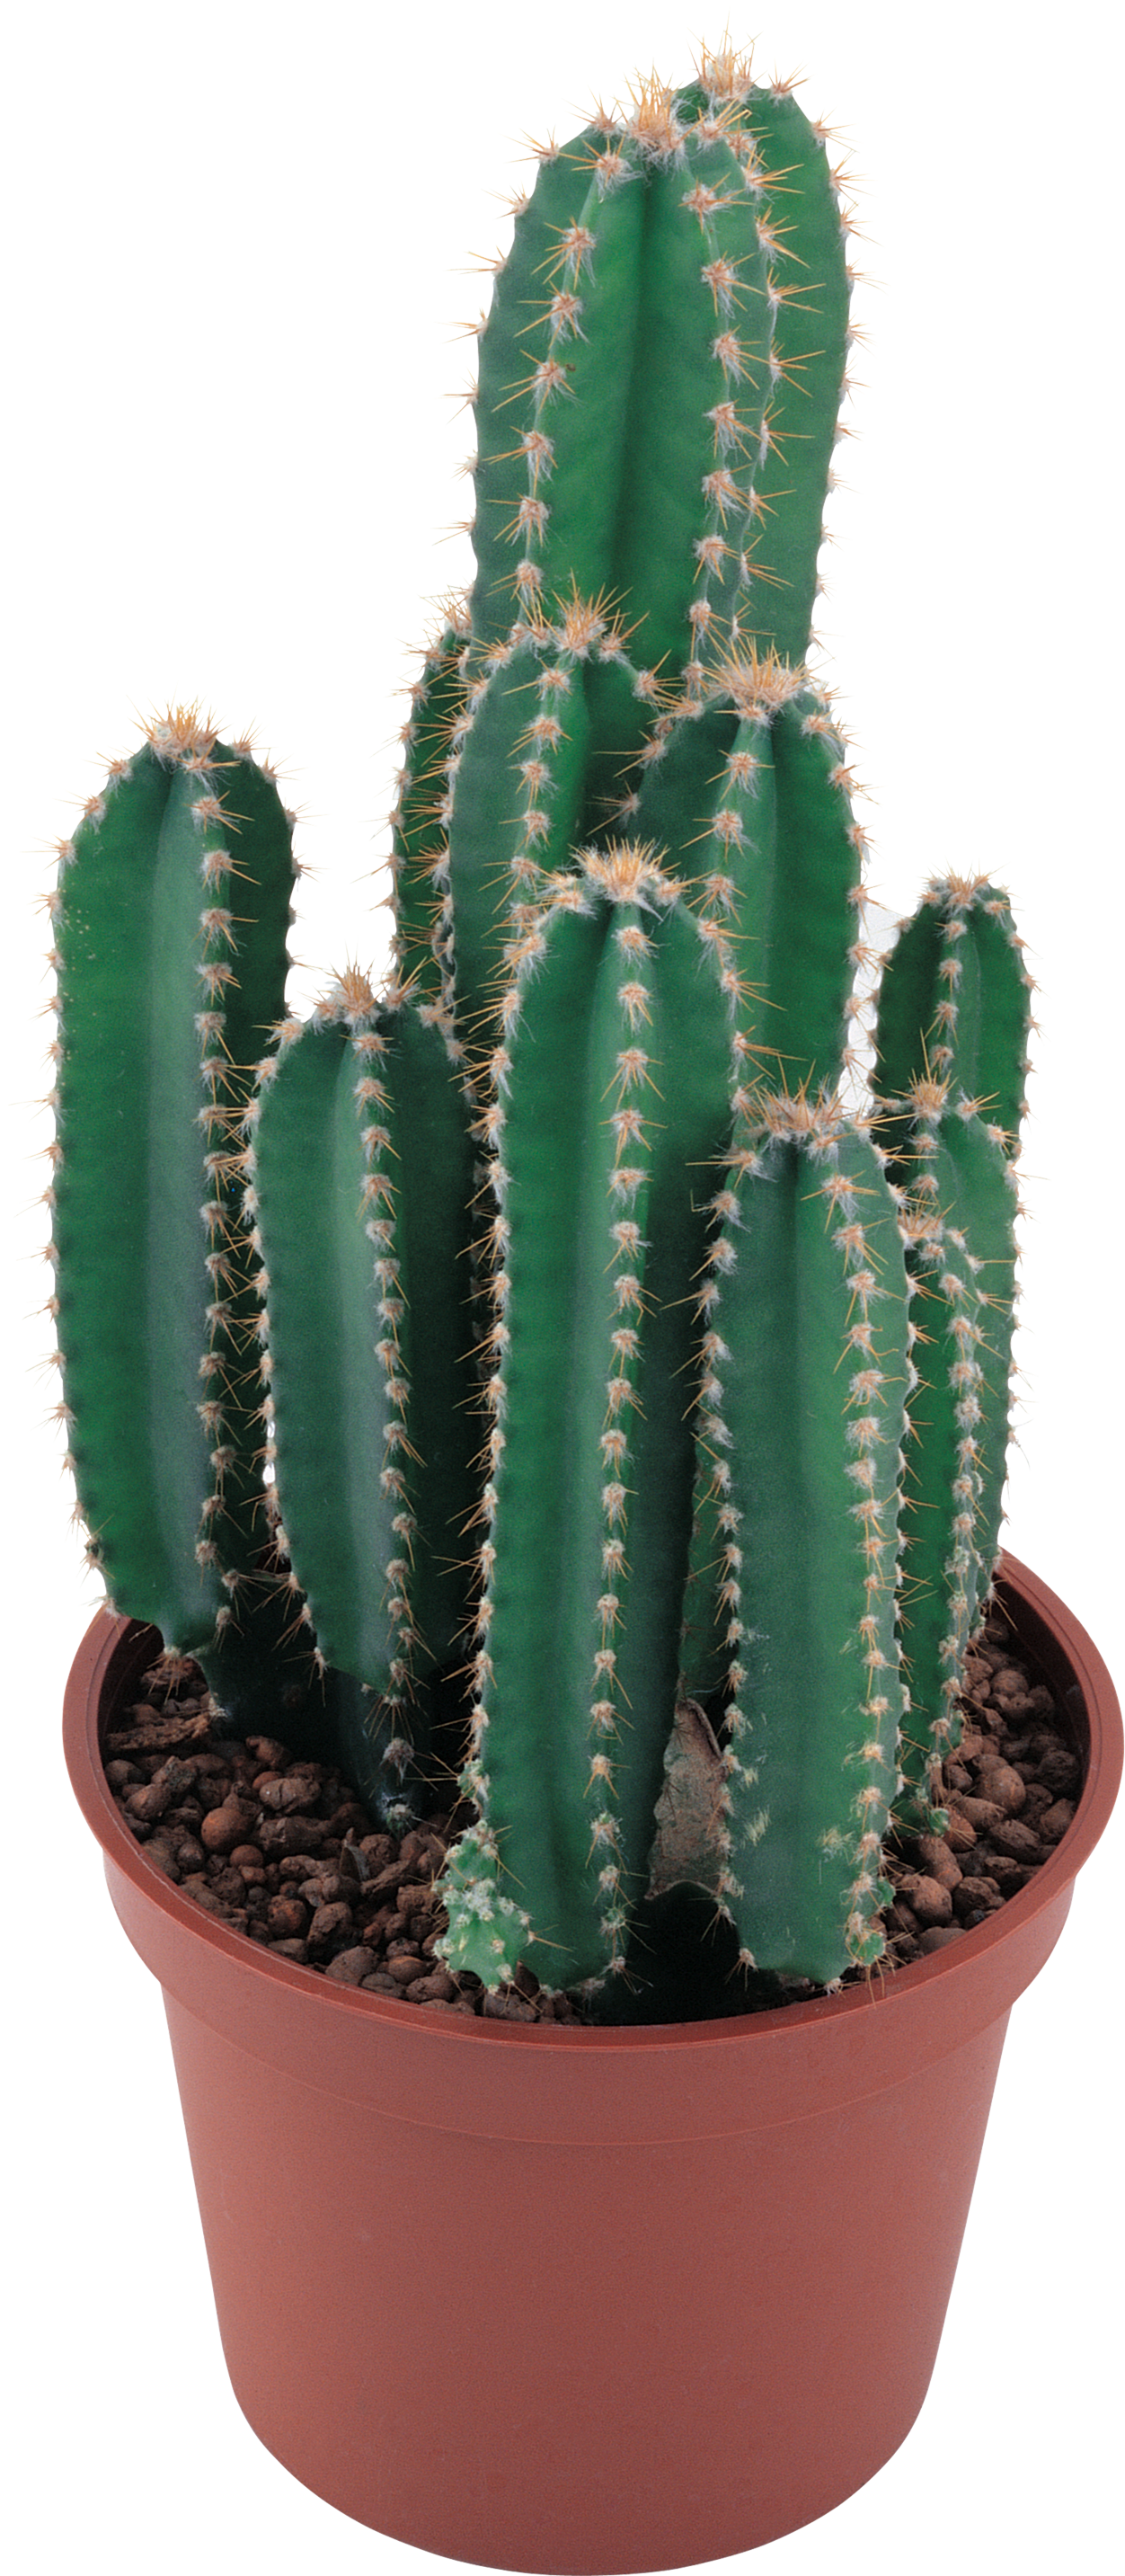 clipart trees cactus